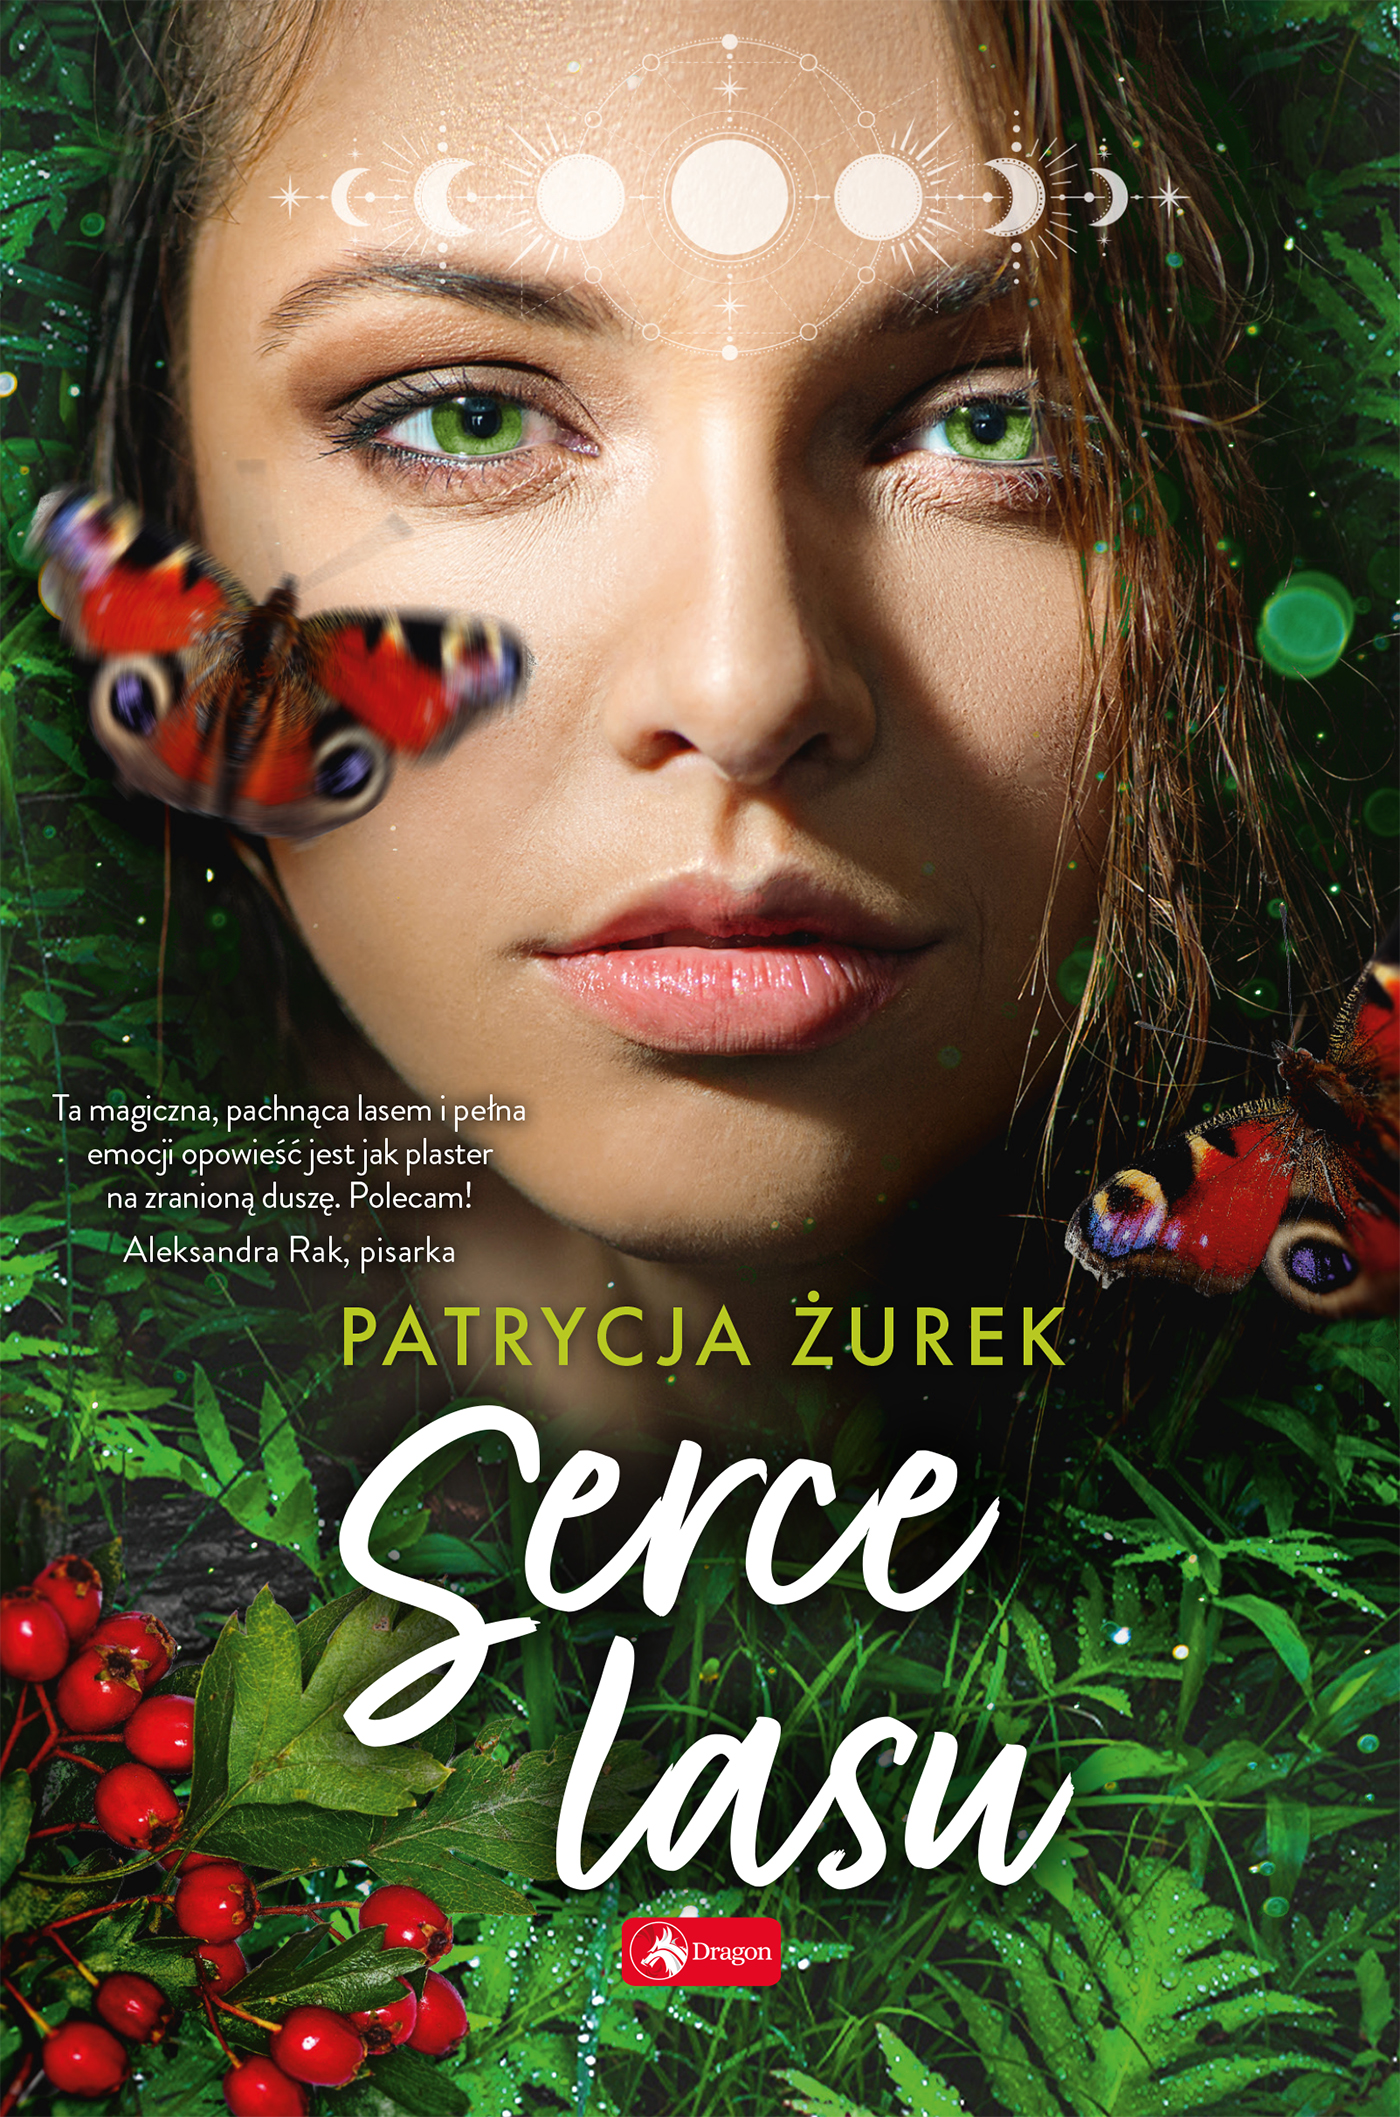 Na okładce ywarz kobiety z zielonymi oczami, w tle zieleń traw, liści, kolorowe motyle.